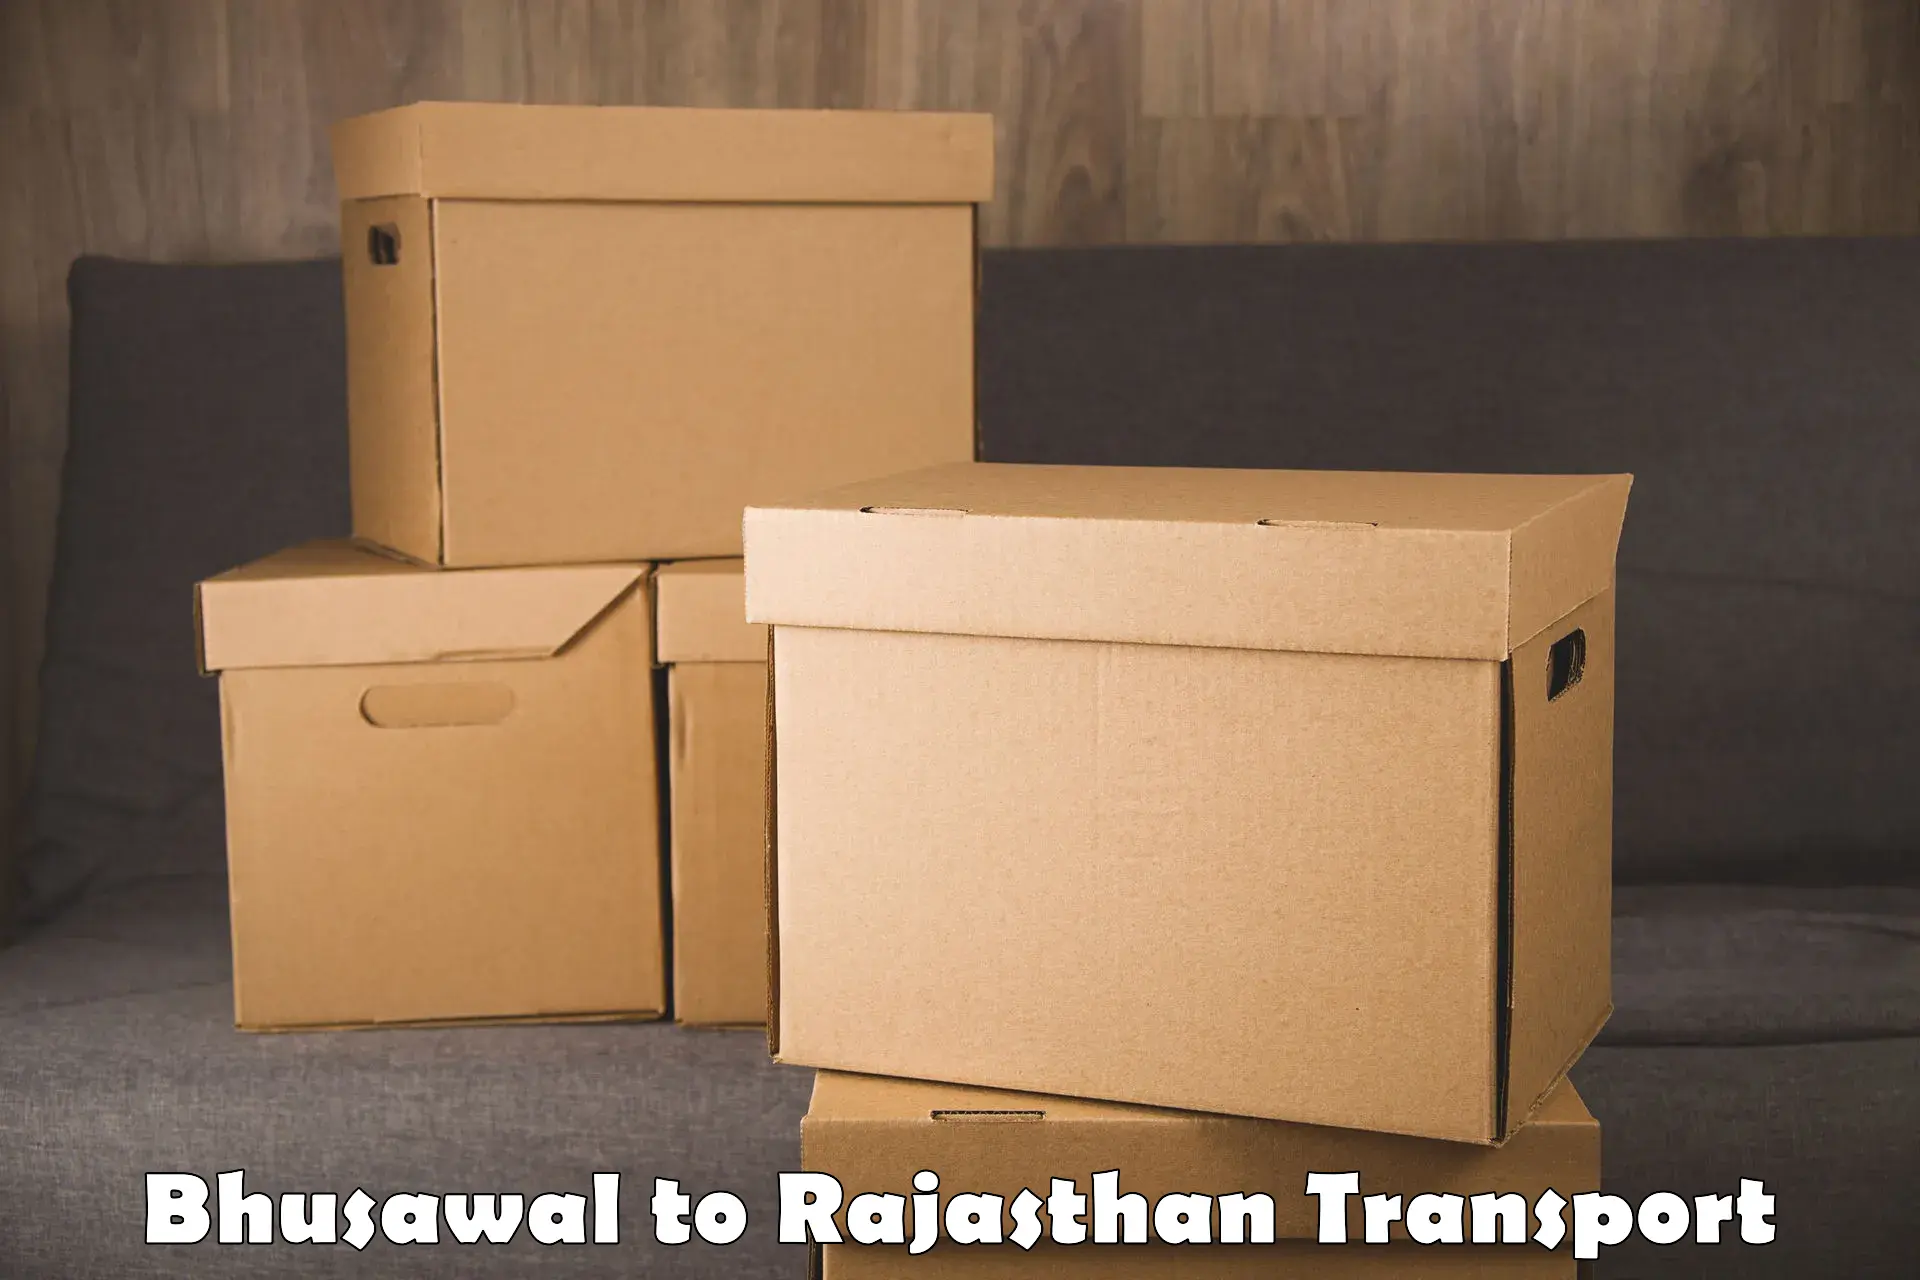 Daily transport service Bhusawal to Kumbhalgarh